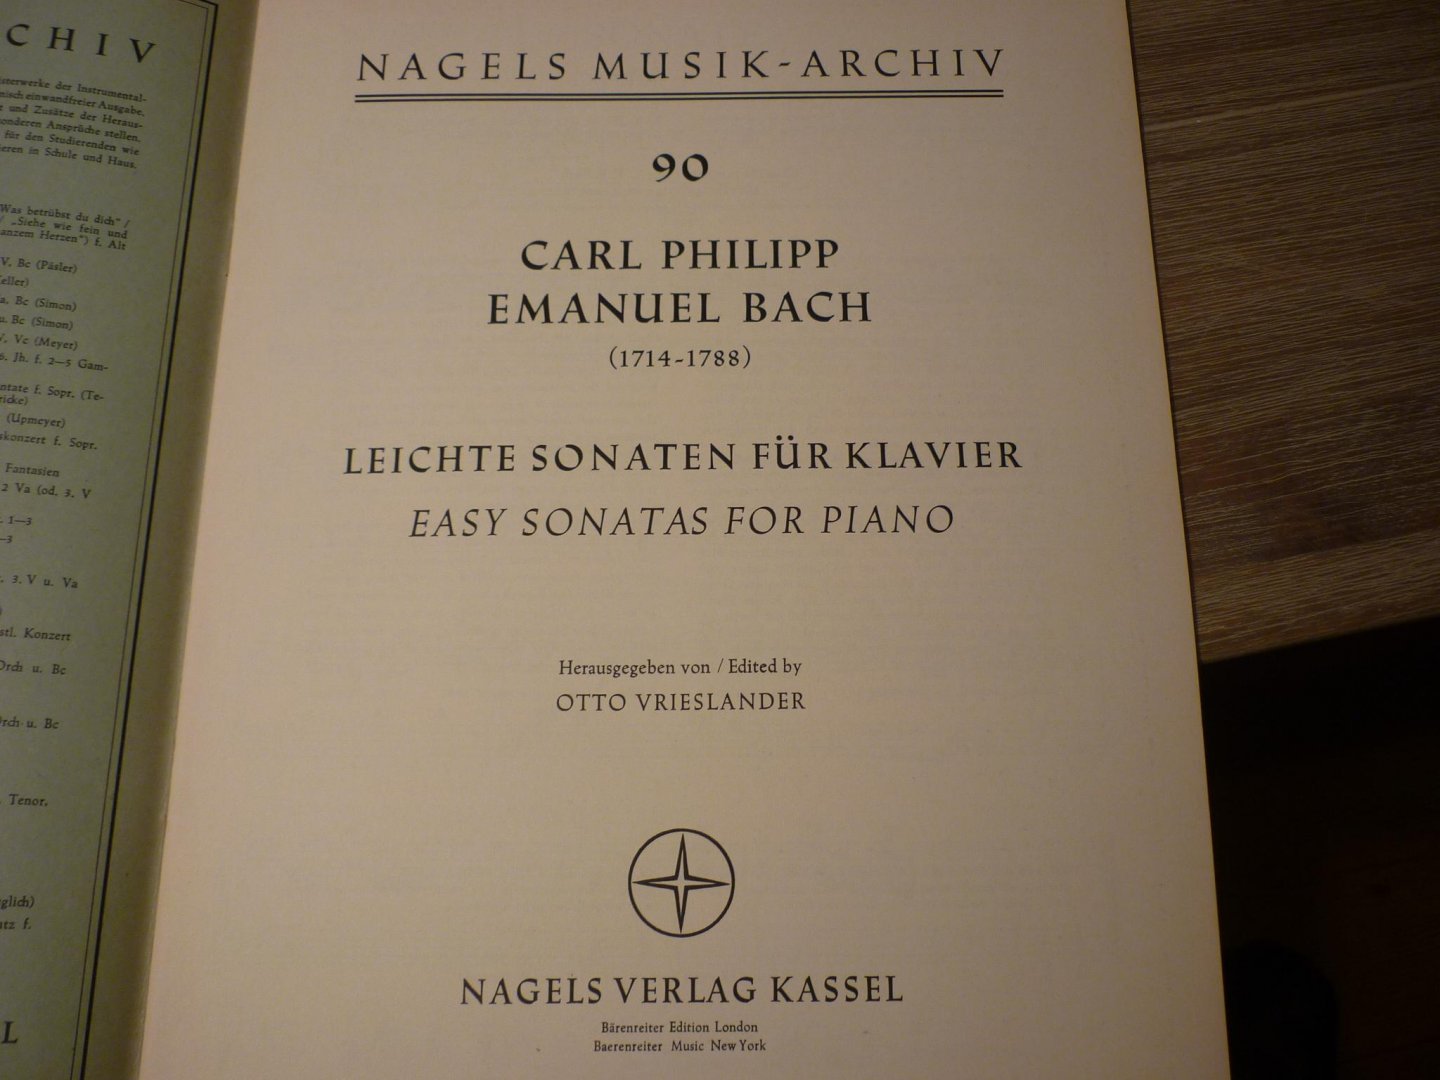 Bach; Carl Philipp Emanuel (1714 - 1788) Serie; Nagels Musik-Archiv - 90 (herausgegeben von Otto Vrieslander) - Vier Leichte Sonaten fur Klavier